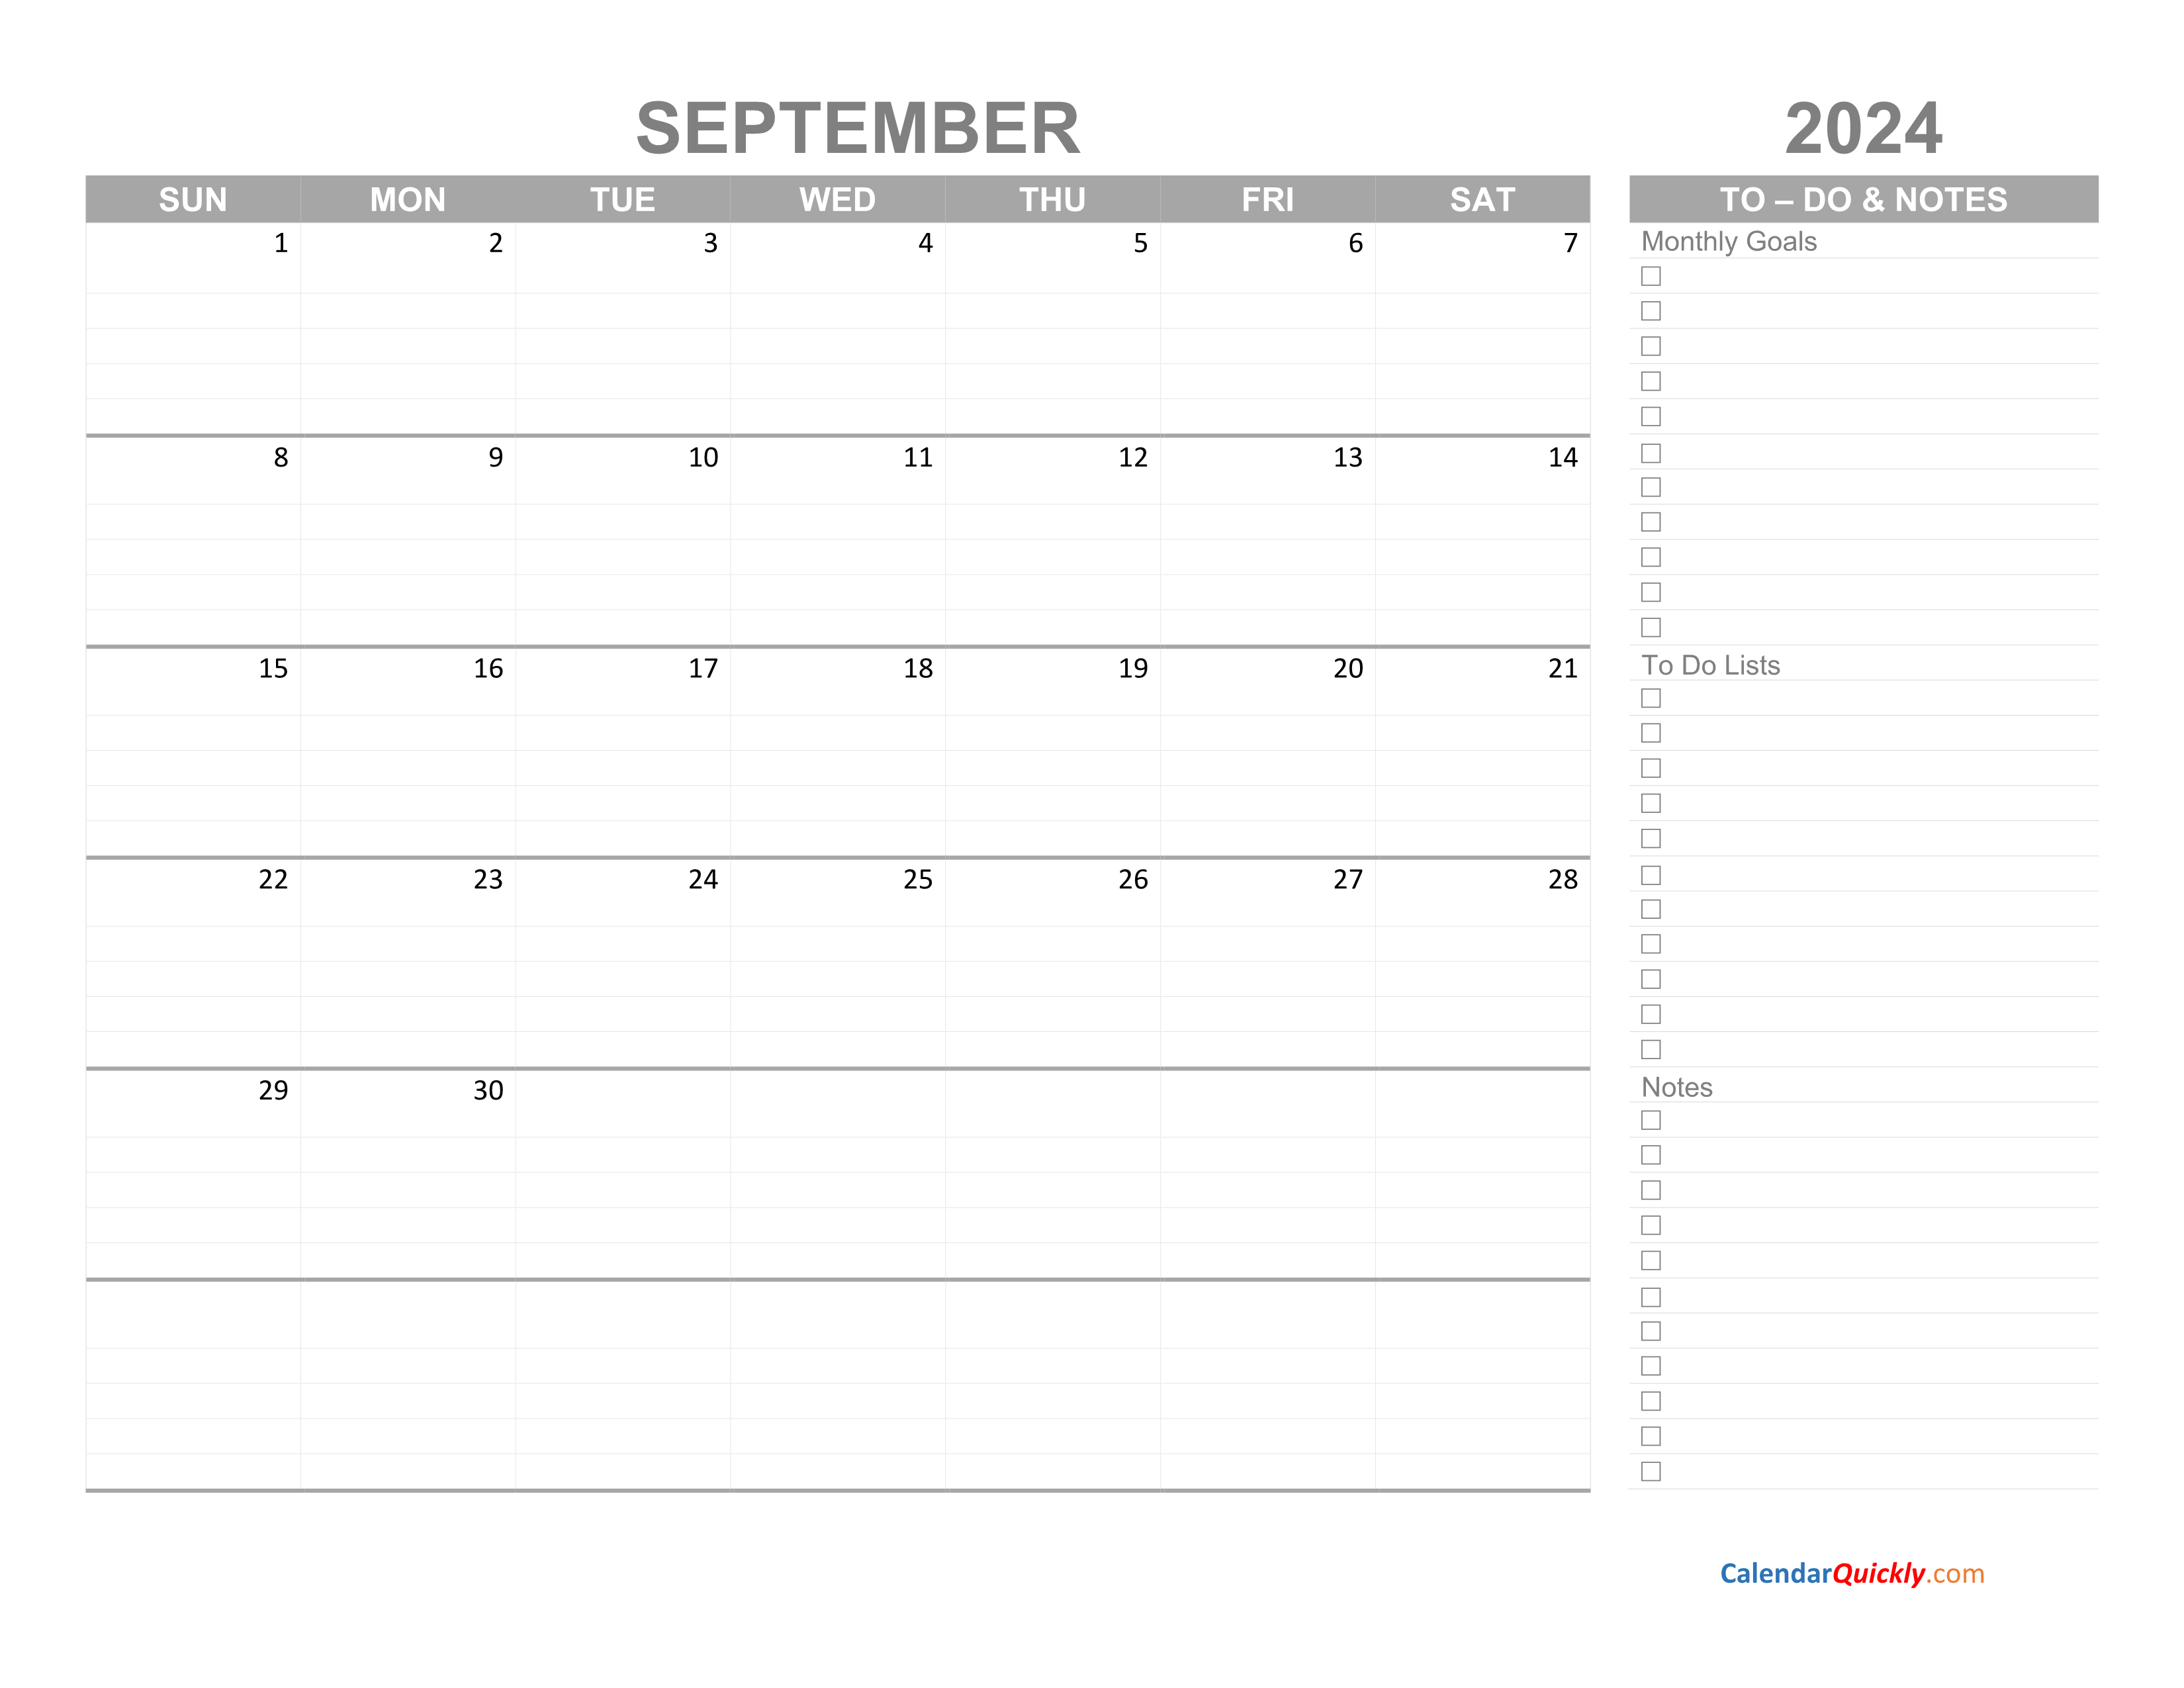 september-2024-calendar-with-to-do-list-calendar-quickly